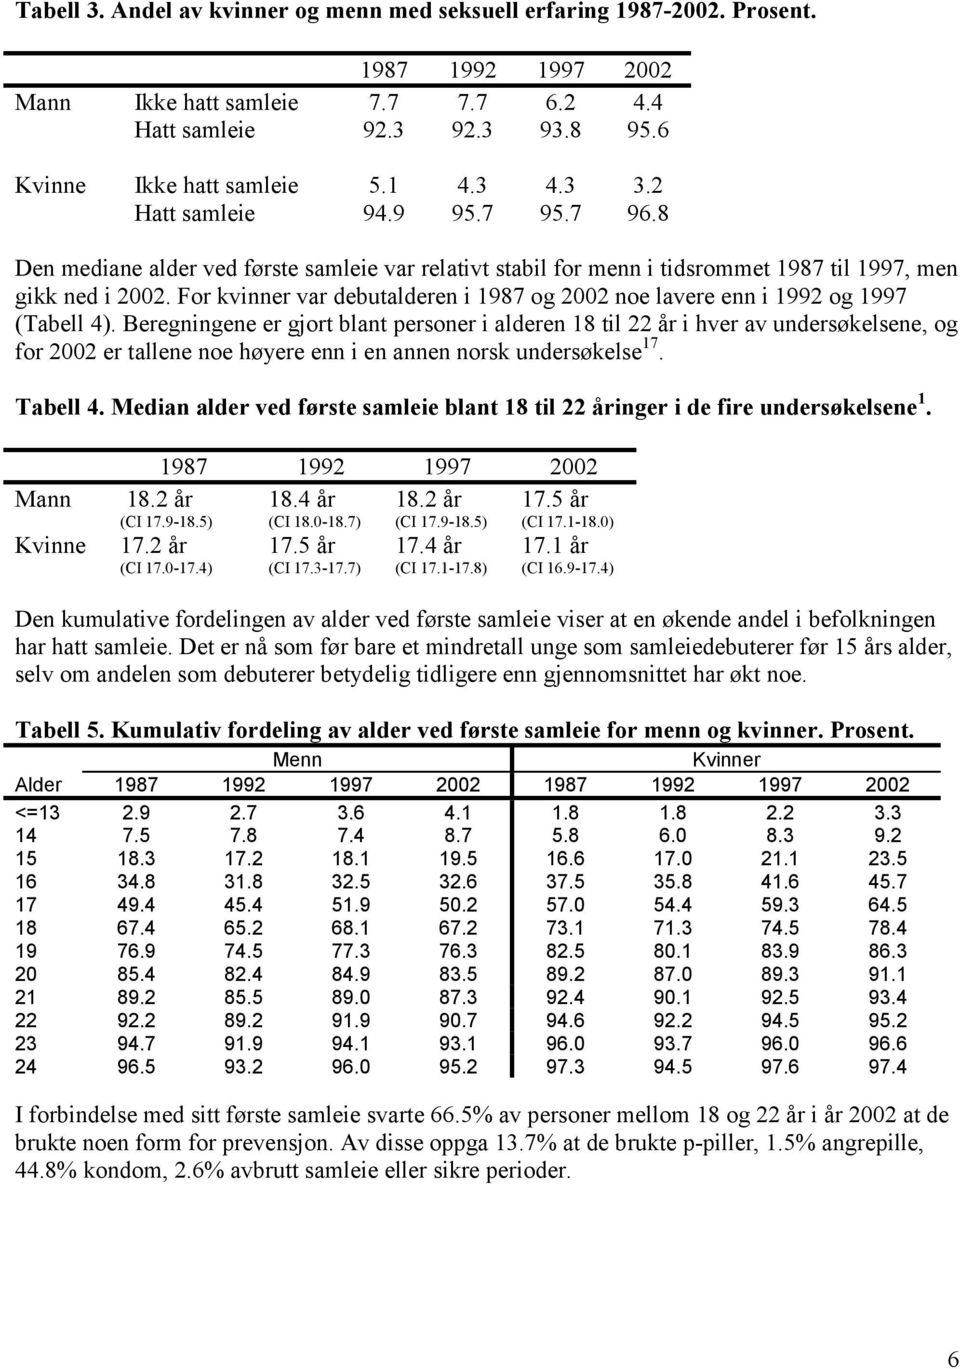 For kvinner var debutalderen i 1987 og 2002 noe lavere enn i 1992 og 1997 (Tabell 4).